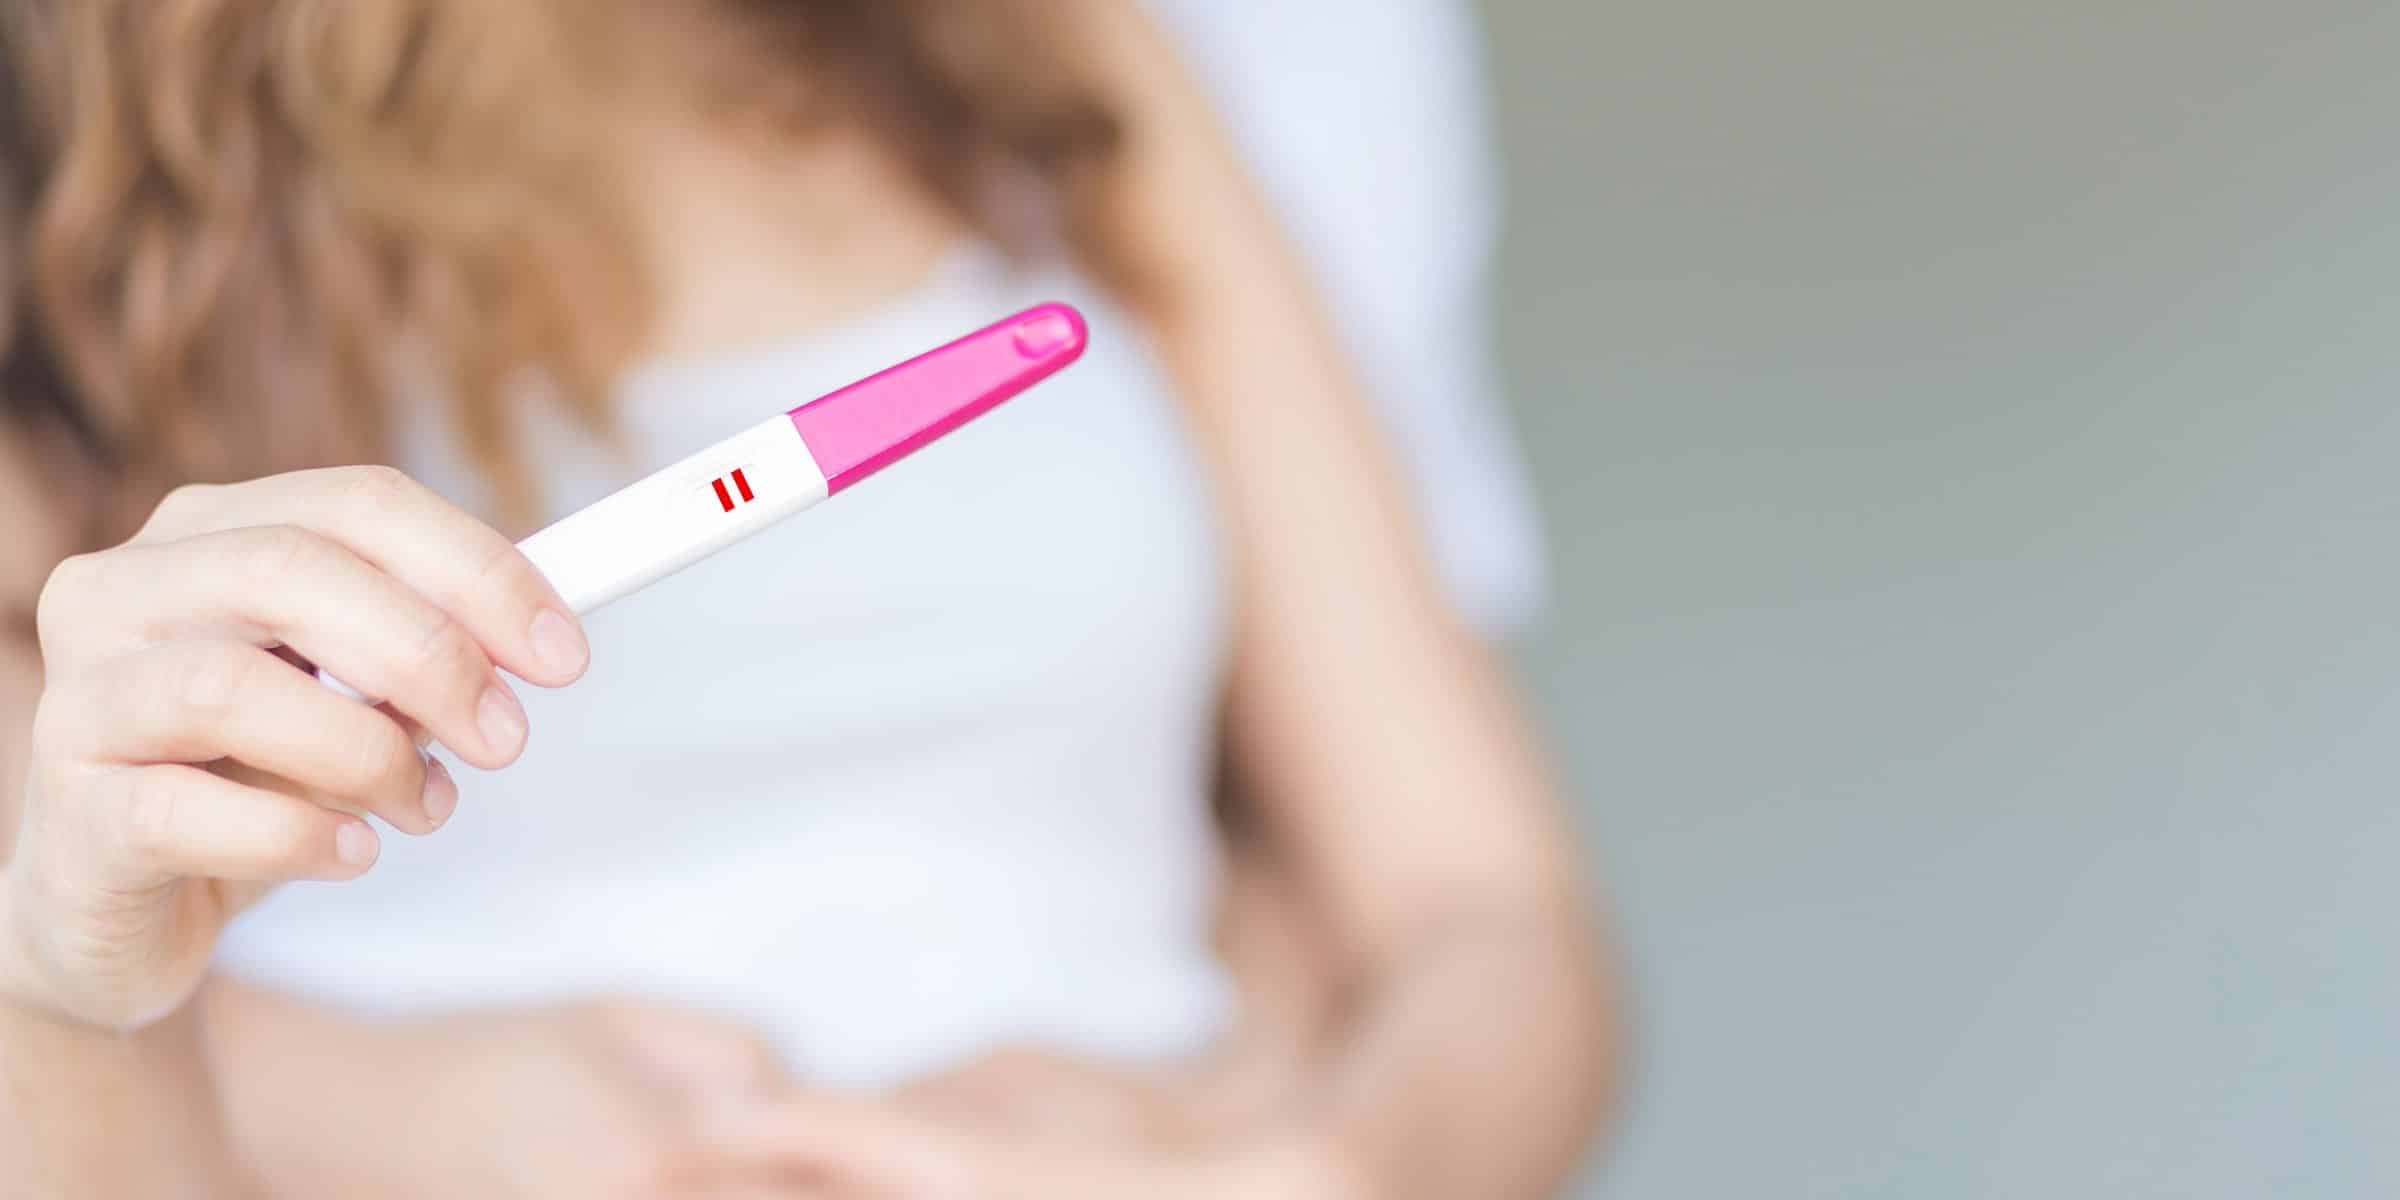 Test embarazo una raya